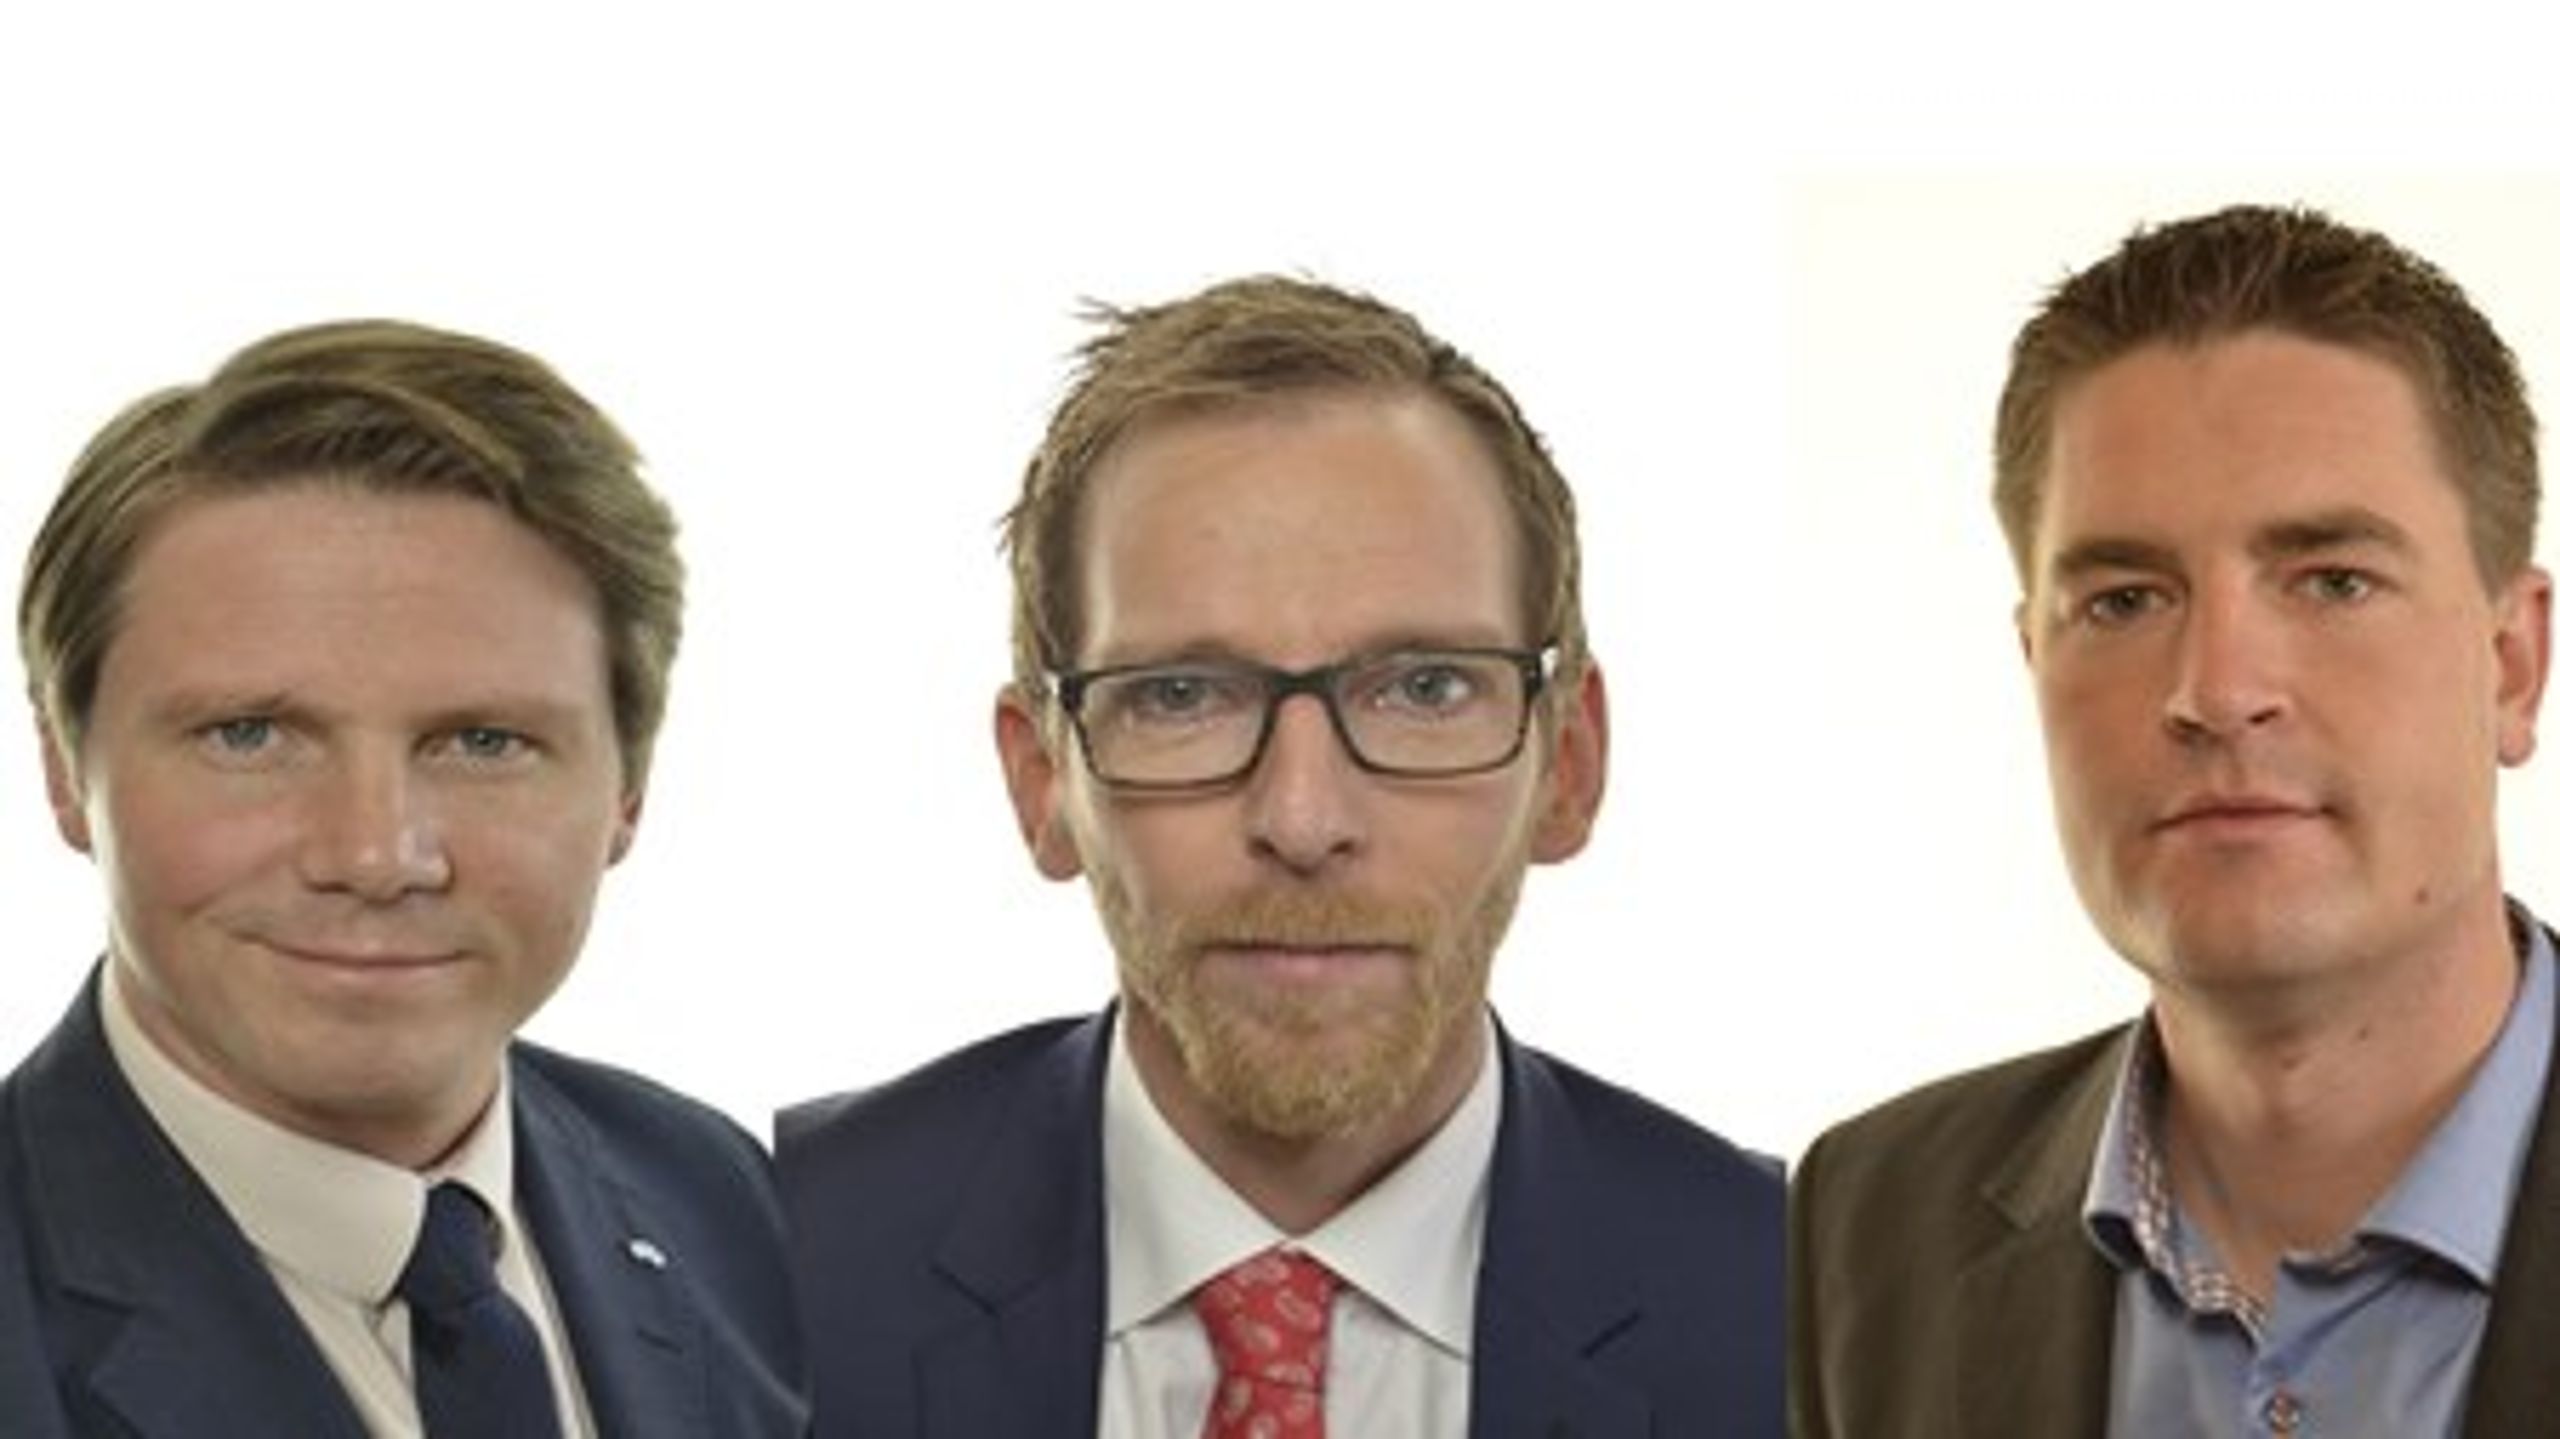 De ekonomisk-politisk talespersonerna Erik Ullenhag (FP), Jakob Forssmed (KD) och Oscar Sjöstedt (SD) har alla lyft fram äldrefrågor i respektive partis budgetmotioner.<br>